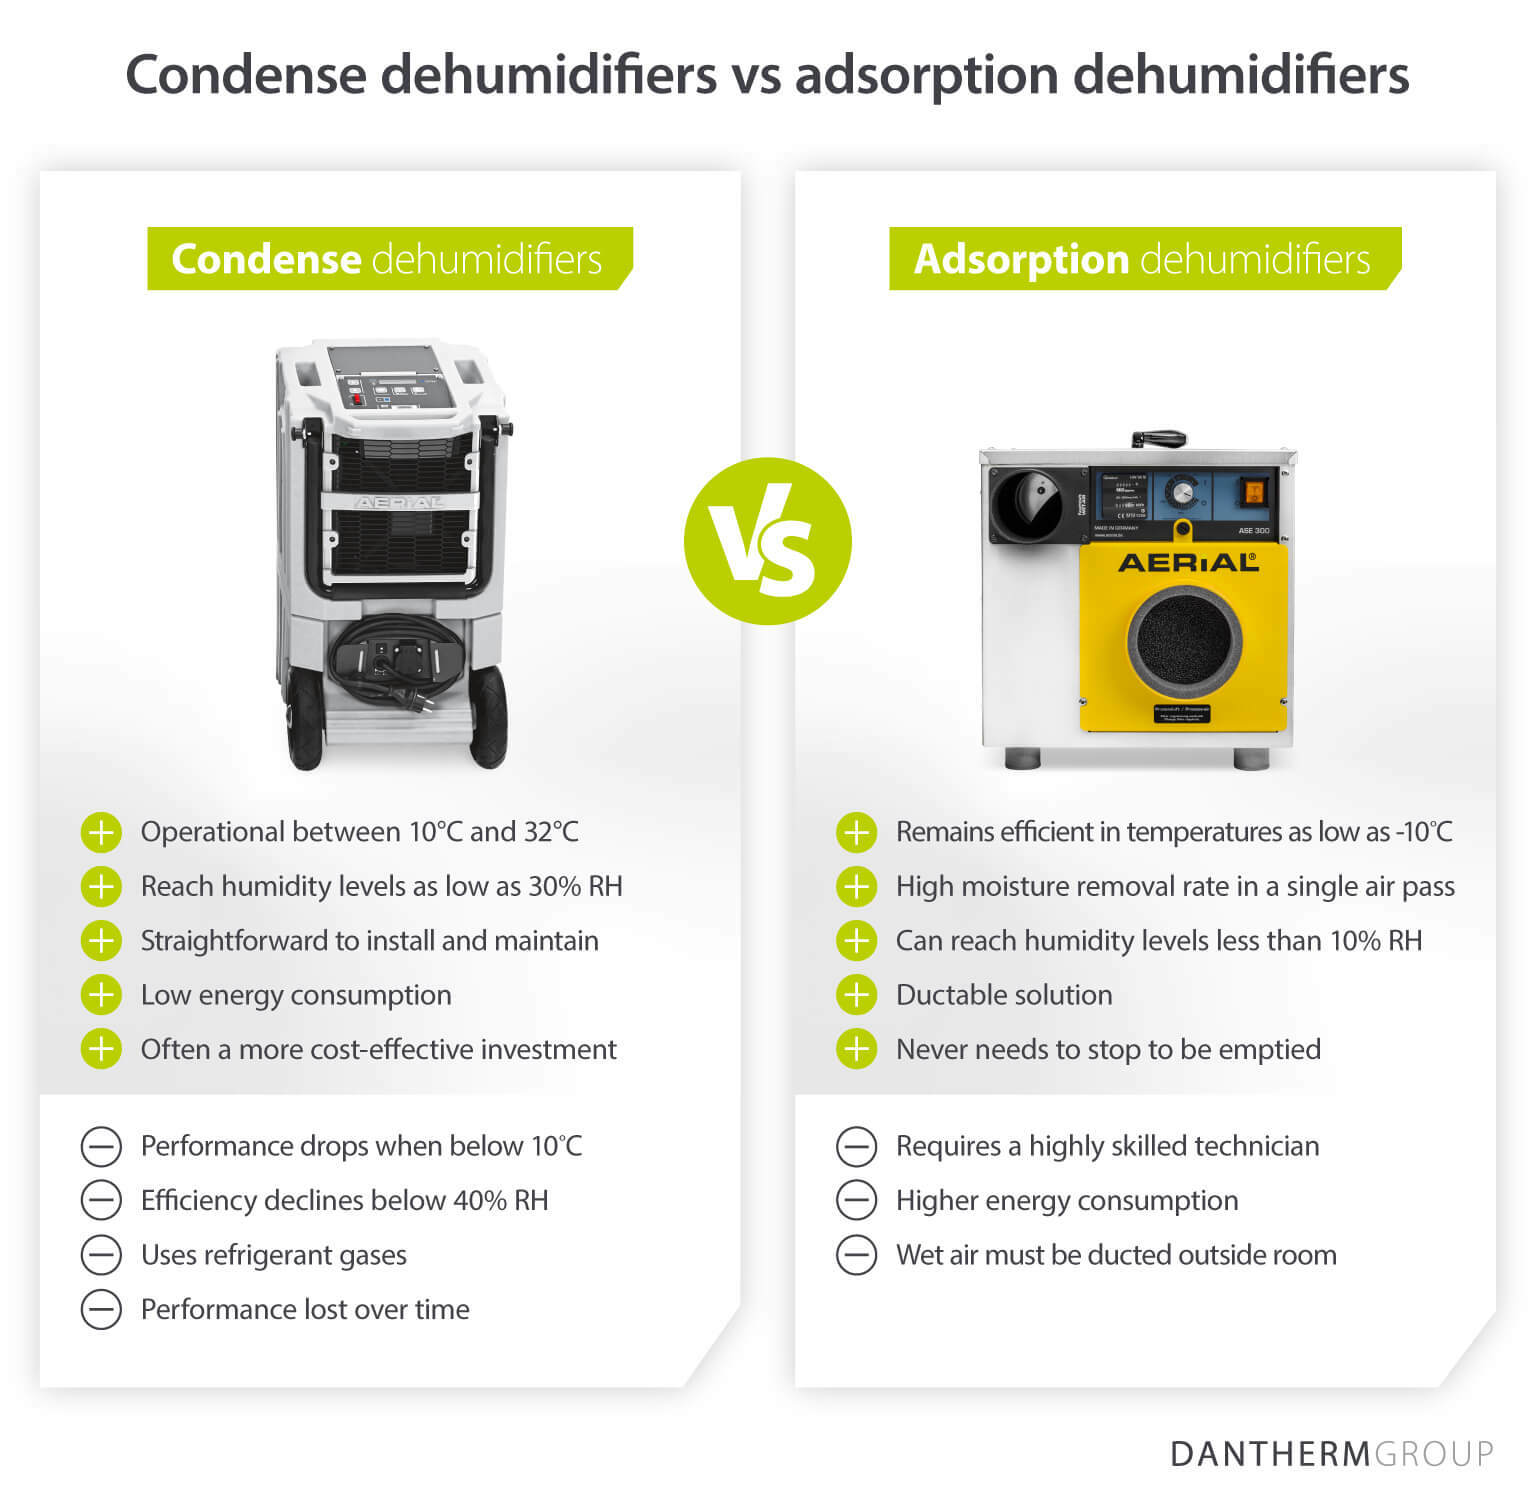 Comparaison des avantages et des inconvénients de l’utilisation de déshumidificateurs à condensation et à adsorption pour traiter les dégâts des eaux - Image infographique